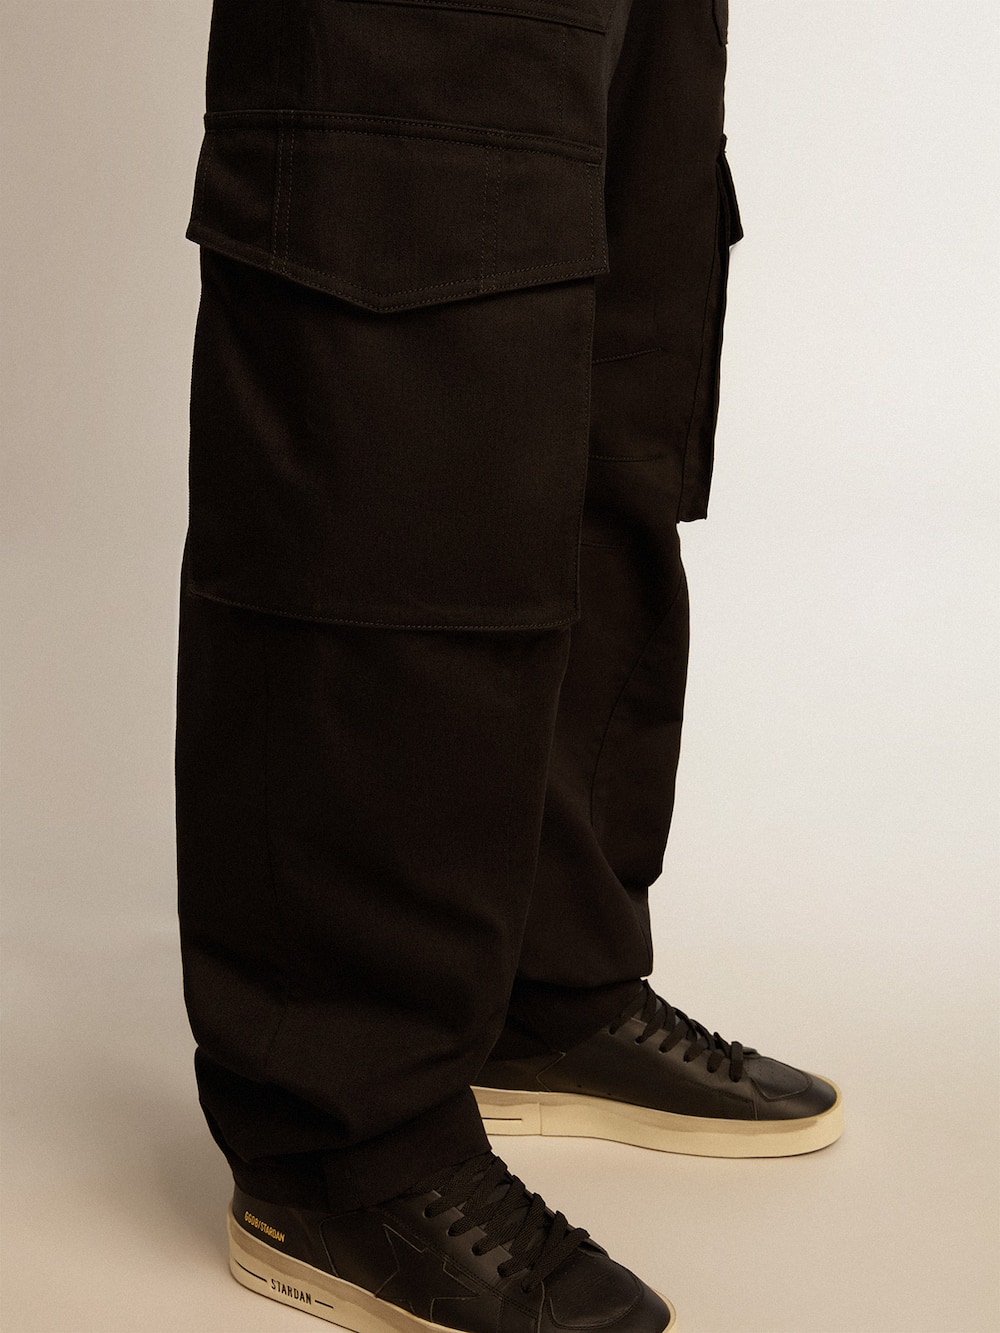 Golden Goose - Pantalón cargo de color negro in 